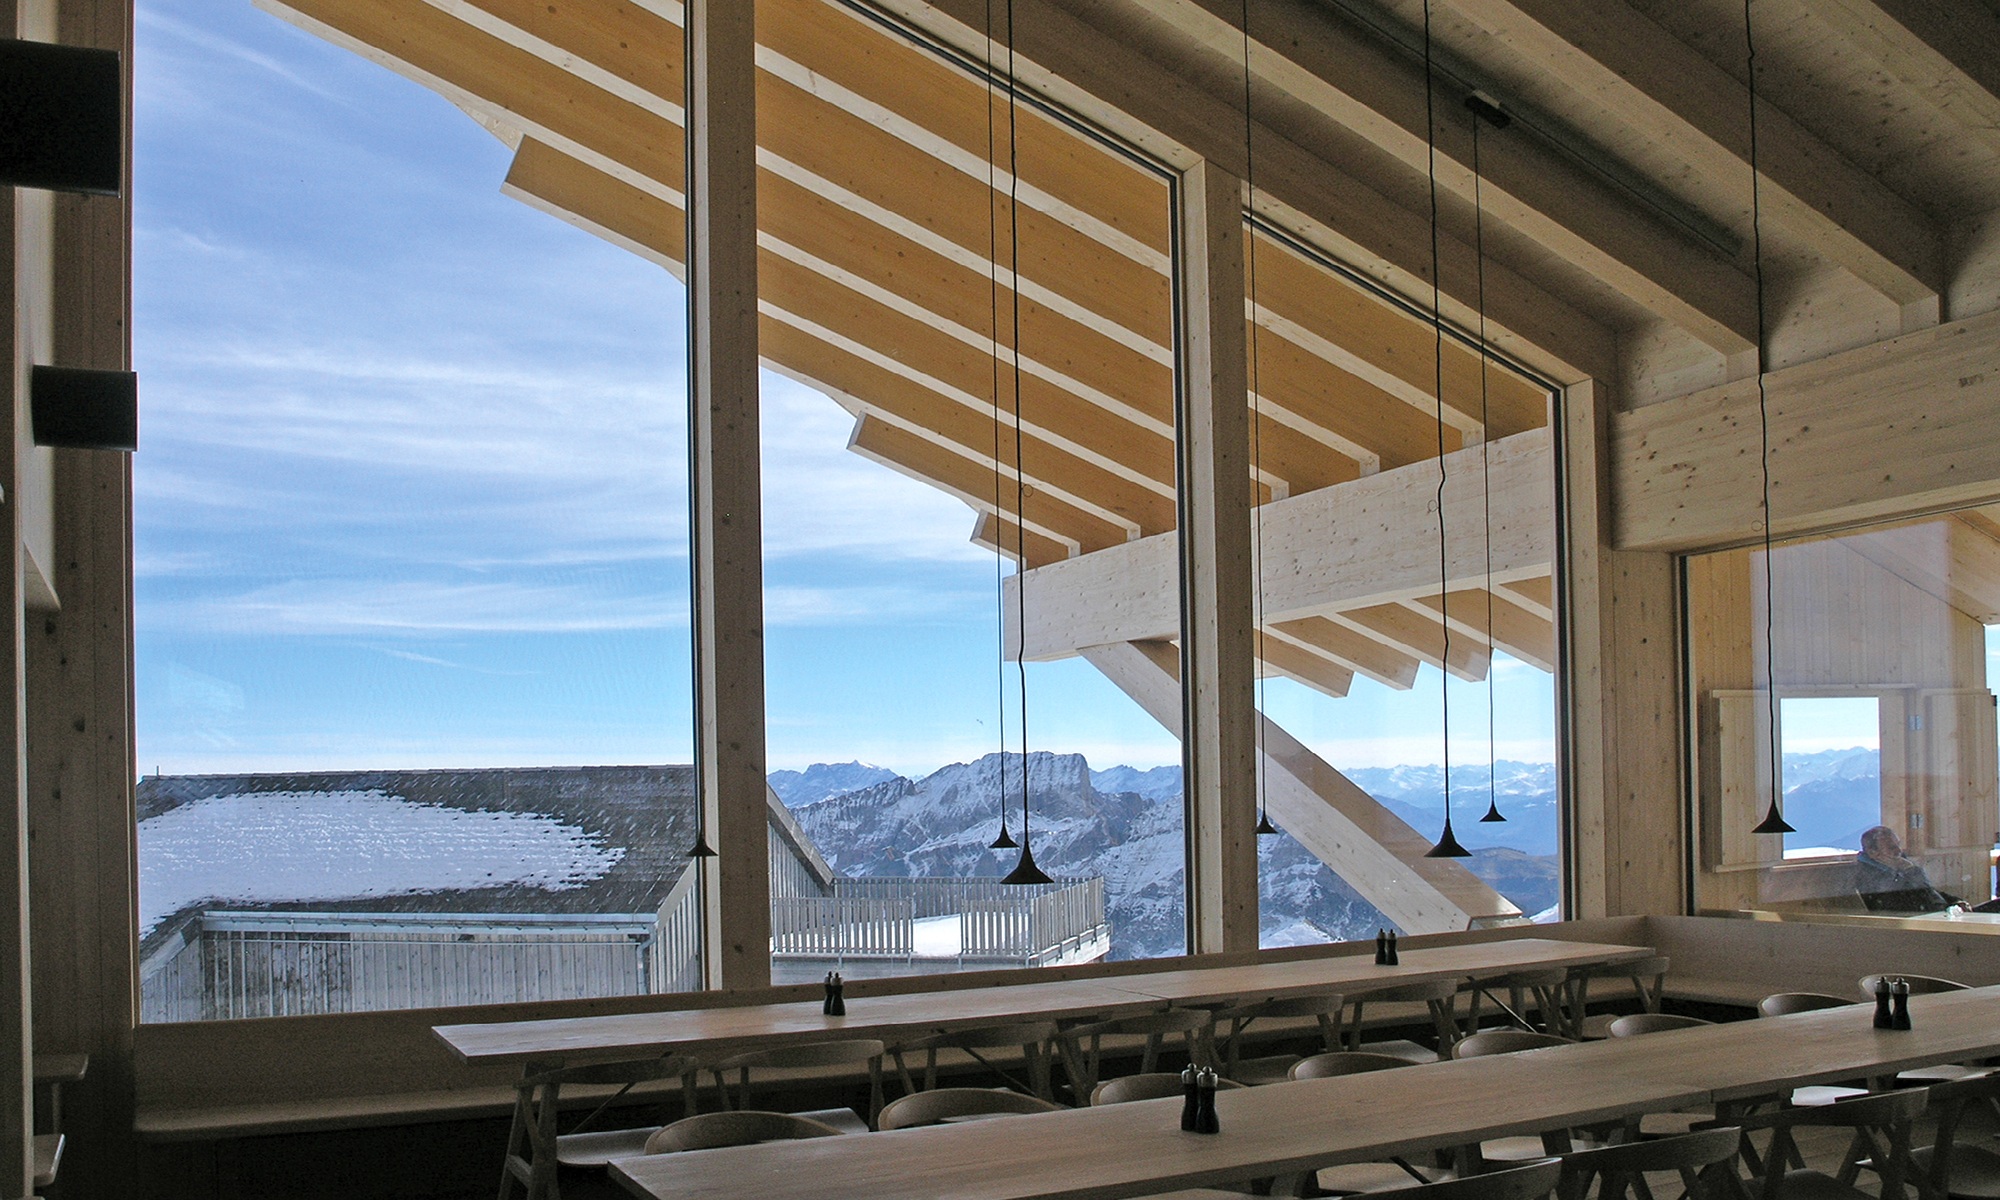 Essbereich Berggasthaus Chäserrugg mit Tischen und Bestuhlung sowie Ausblick auf Bergpanorama bei blauem Himmel